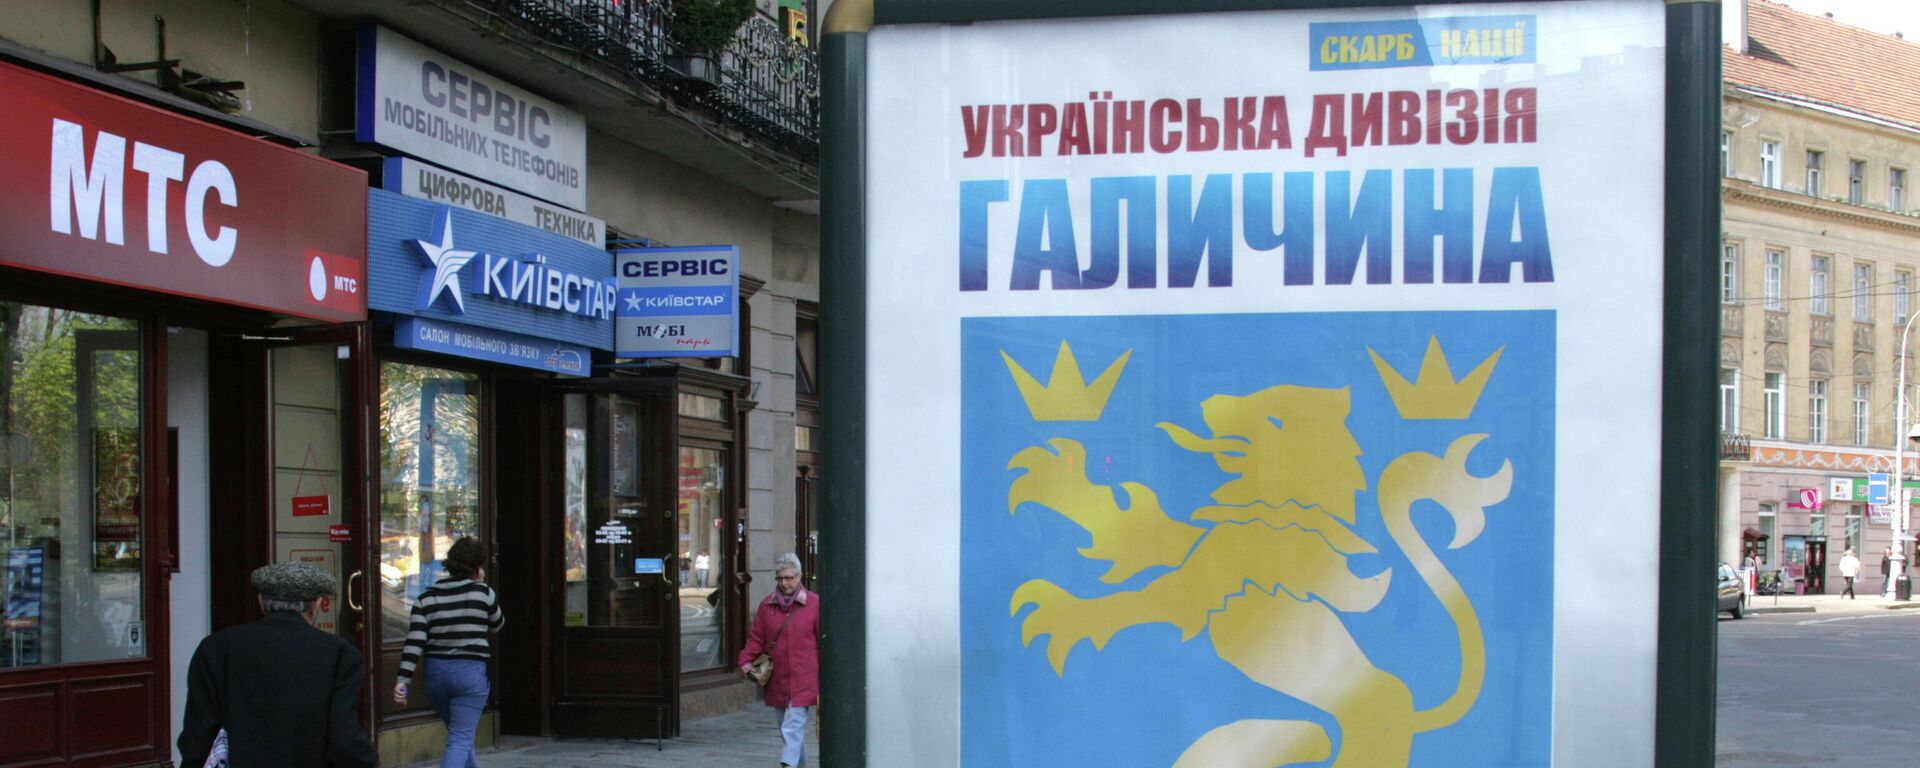 烏克蘭街頭廣告牌在頌揚西烏克蘭居民成立的“加利西亞”師。衛國戰爭期間，該師曾是希特勒德國的幫凶。 - 俄羅斯衛星通訊社, 1920, 13.05.2022